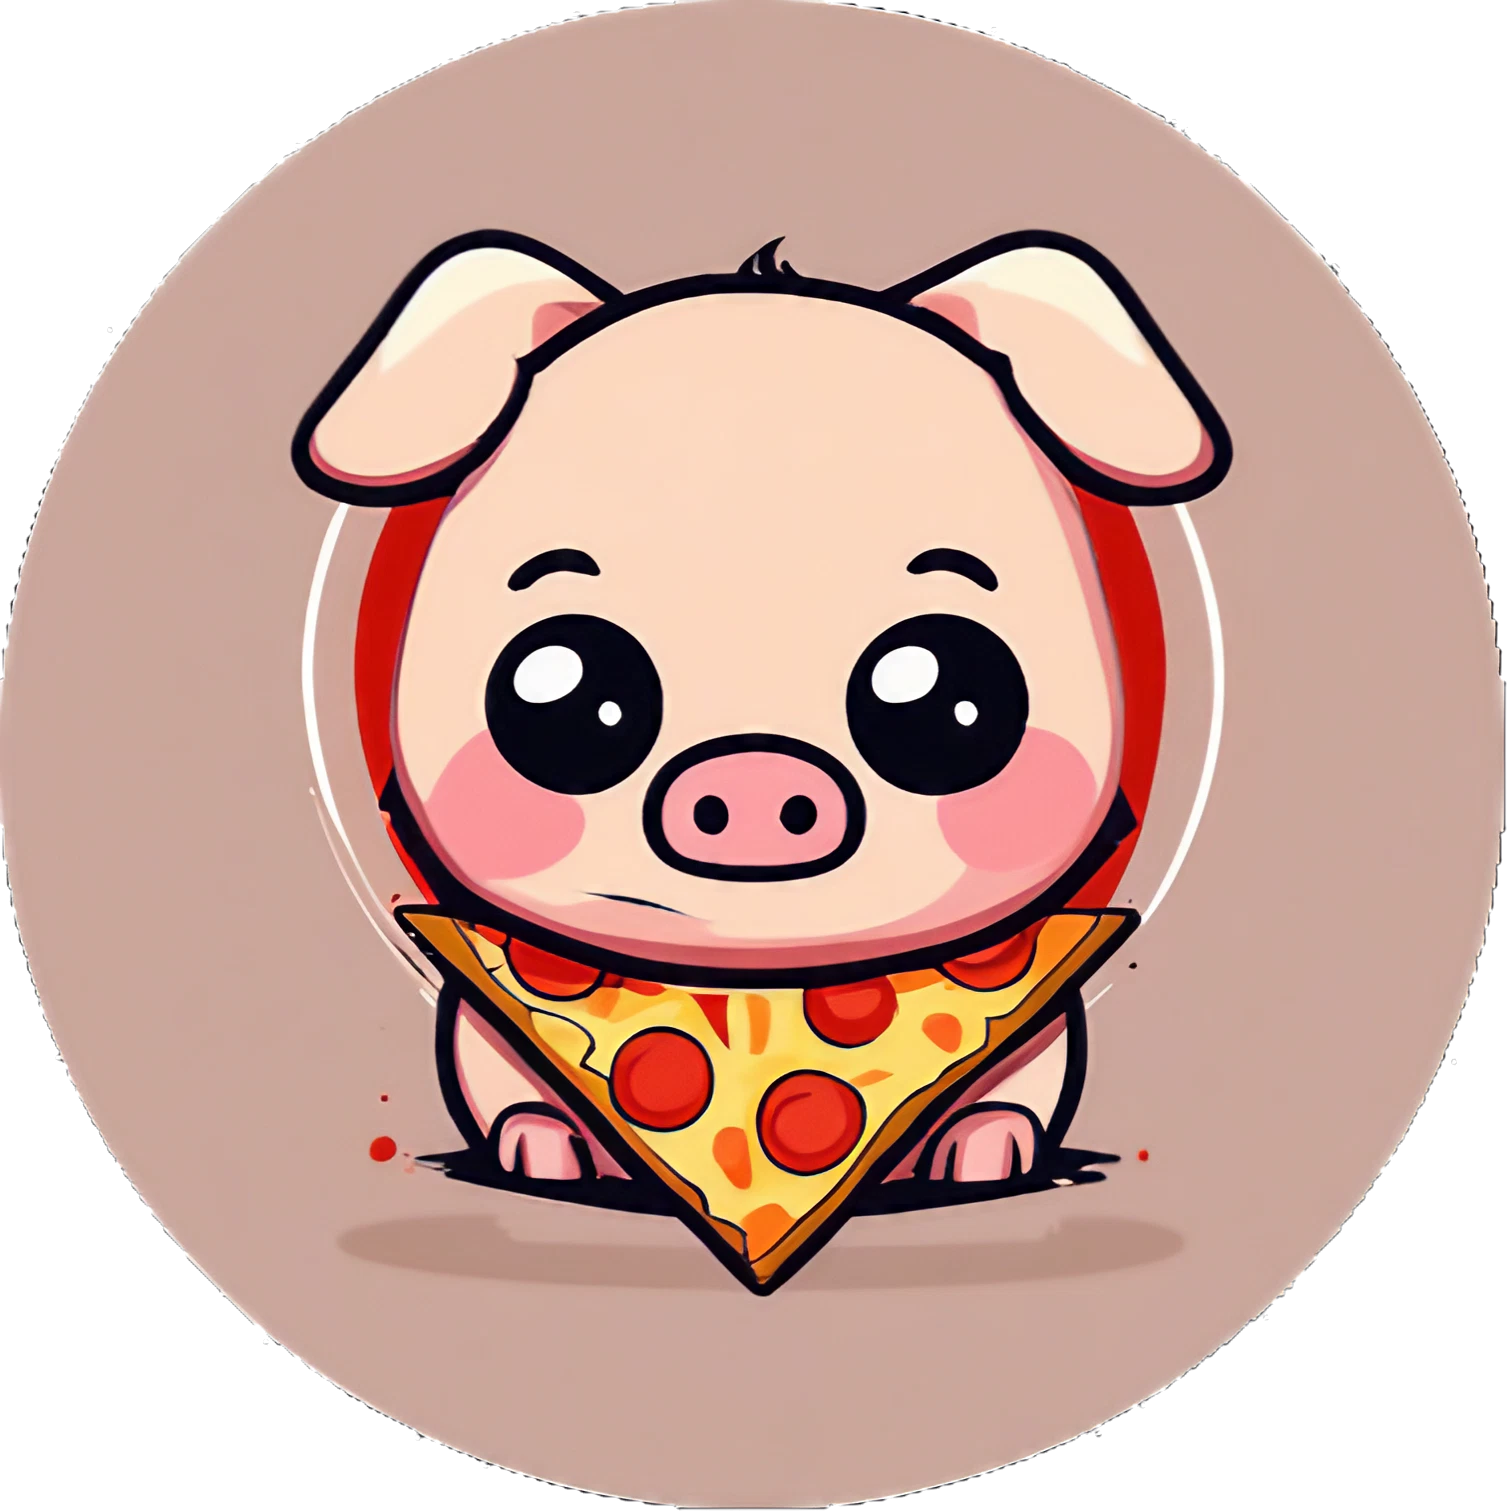 Cute Kawaii Pizza-Ferkel - Sticker - 3x3cm